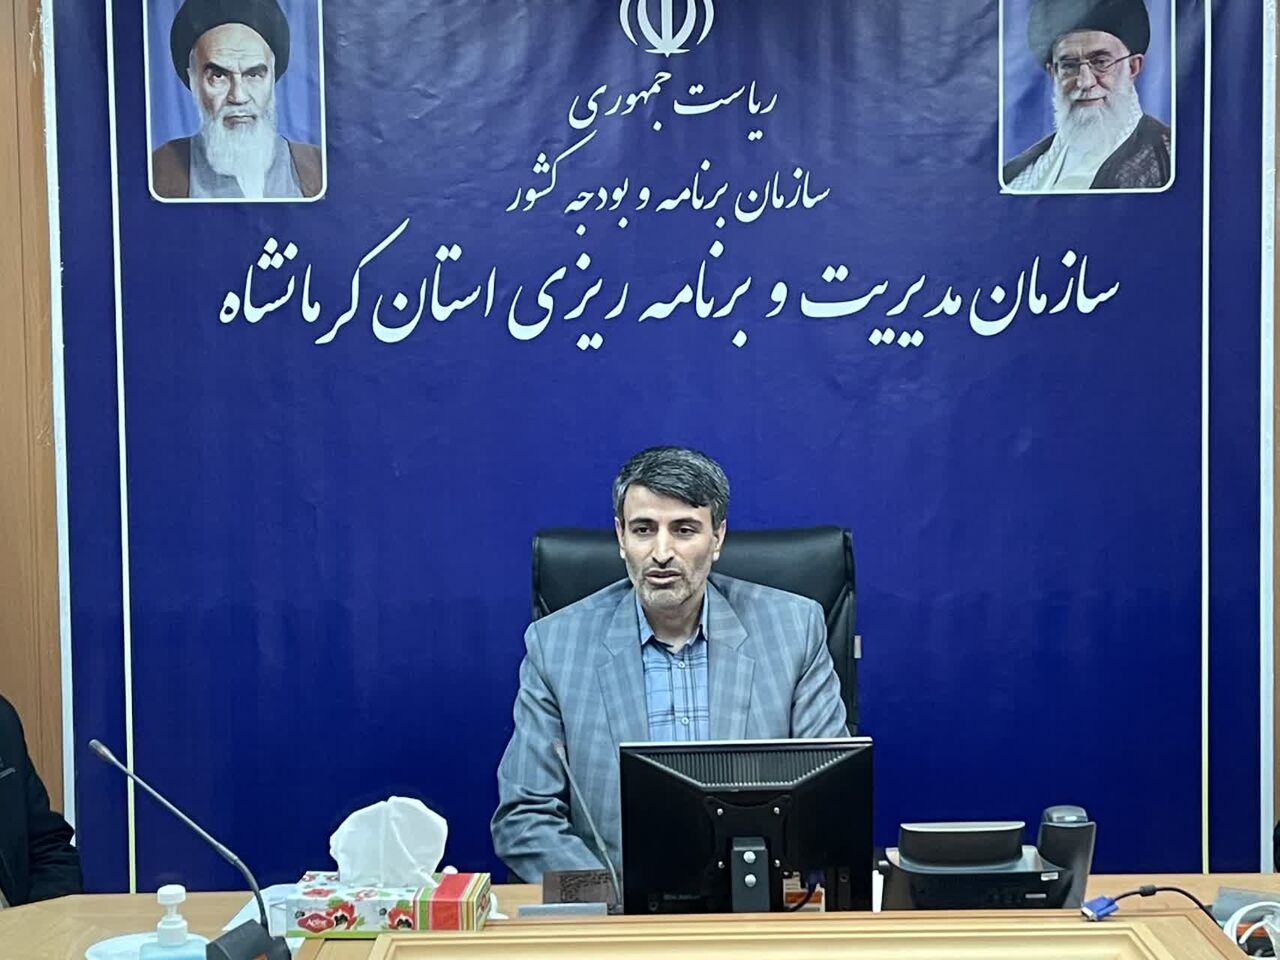 ۴۲ هزار و ۸۹۰ میلیارد ریال اعتبار امسال برای استان کرمانشاه تصویب شد